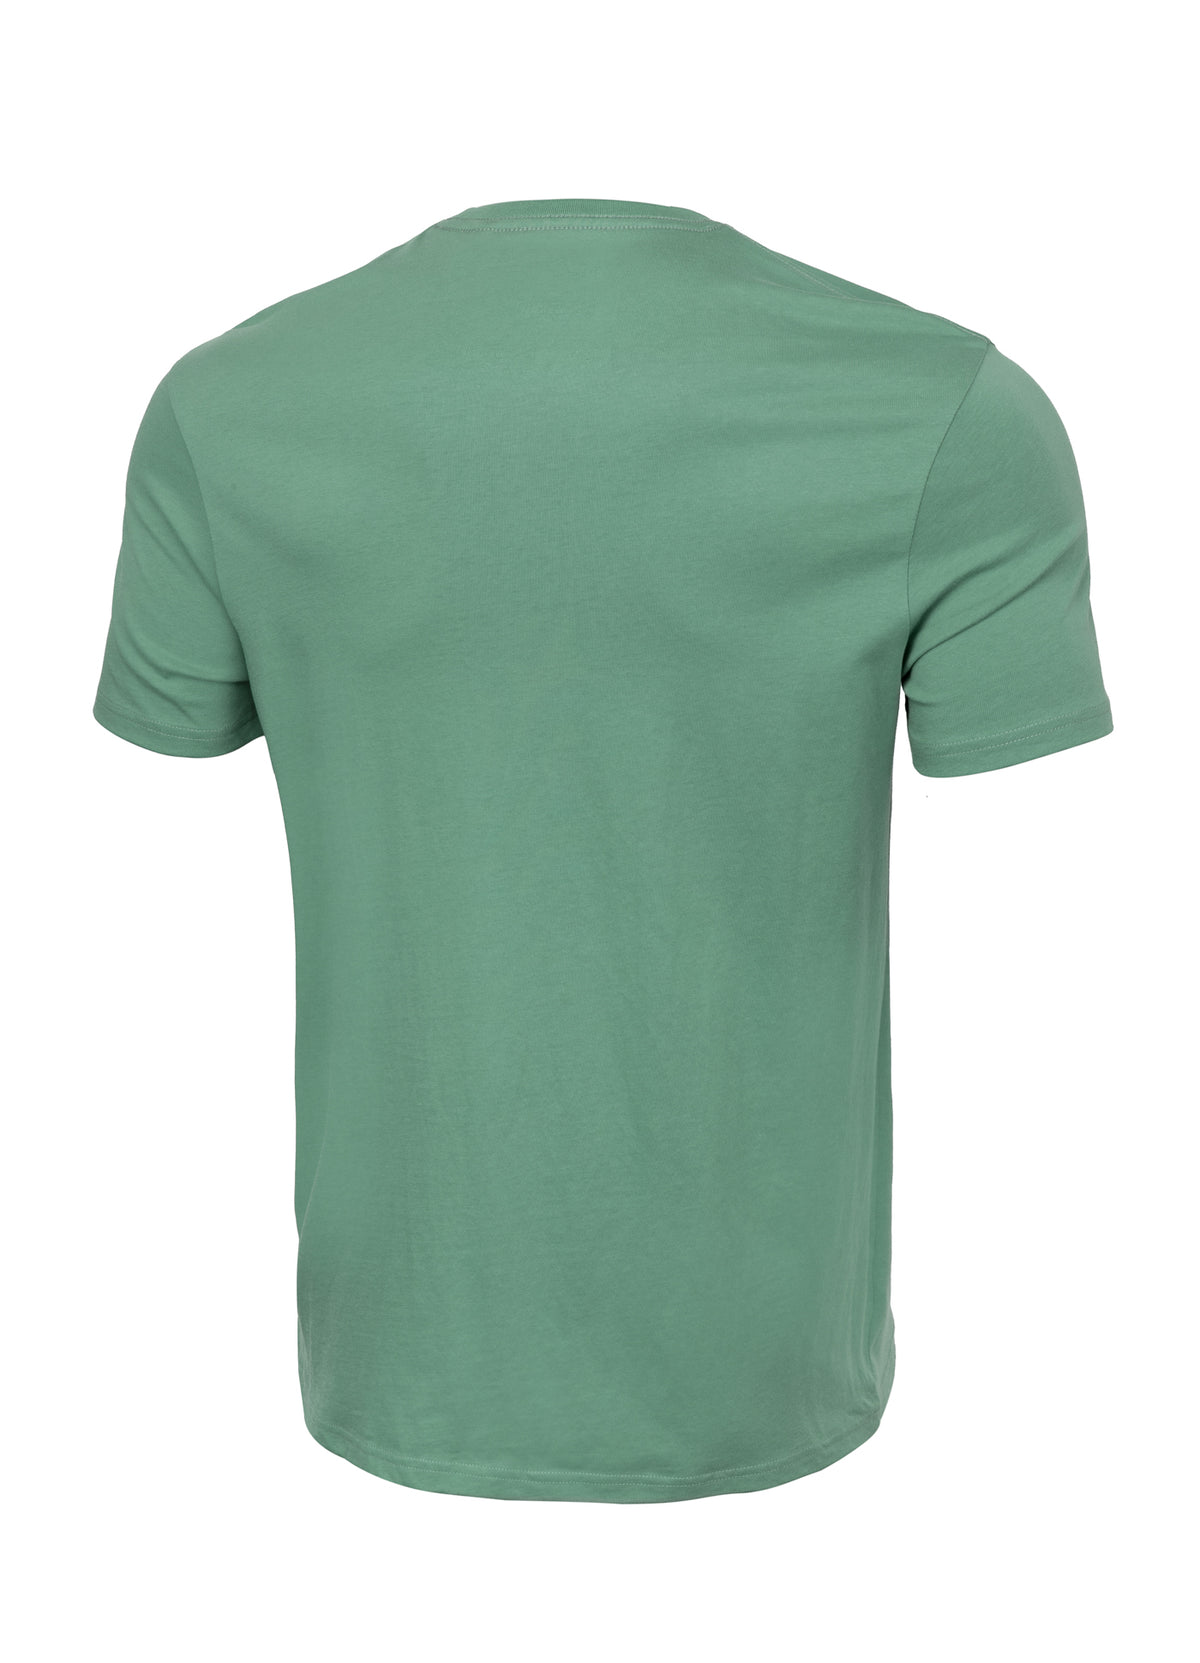 SMALL LOGO Lightweight Mint T-shirt